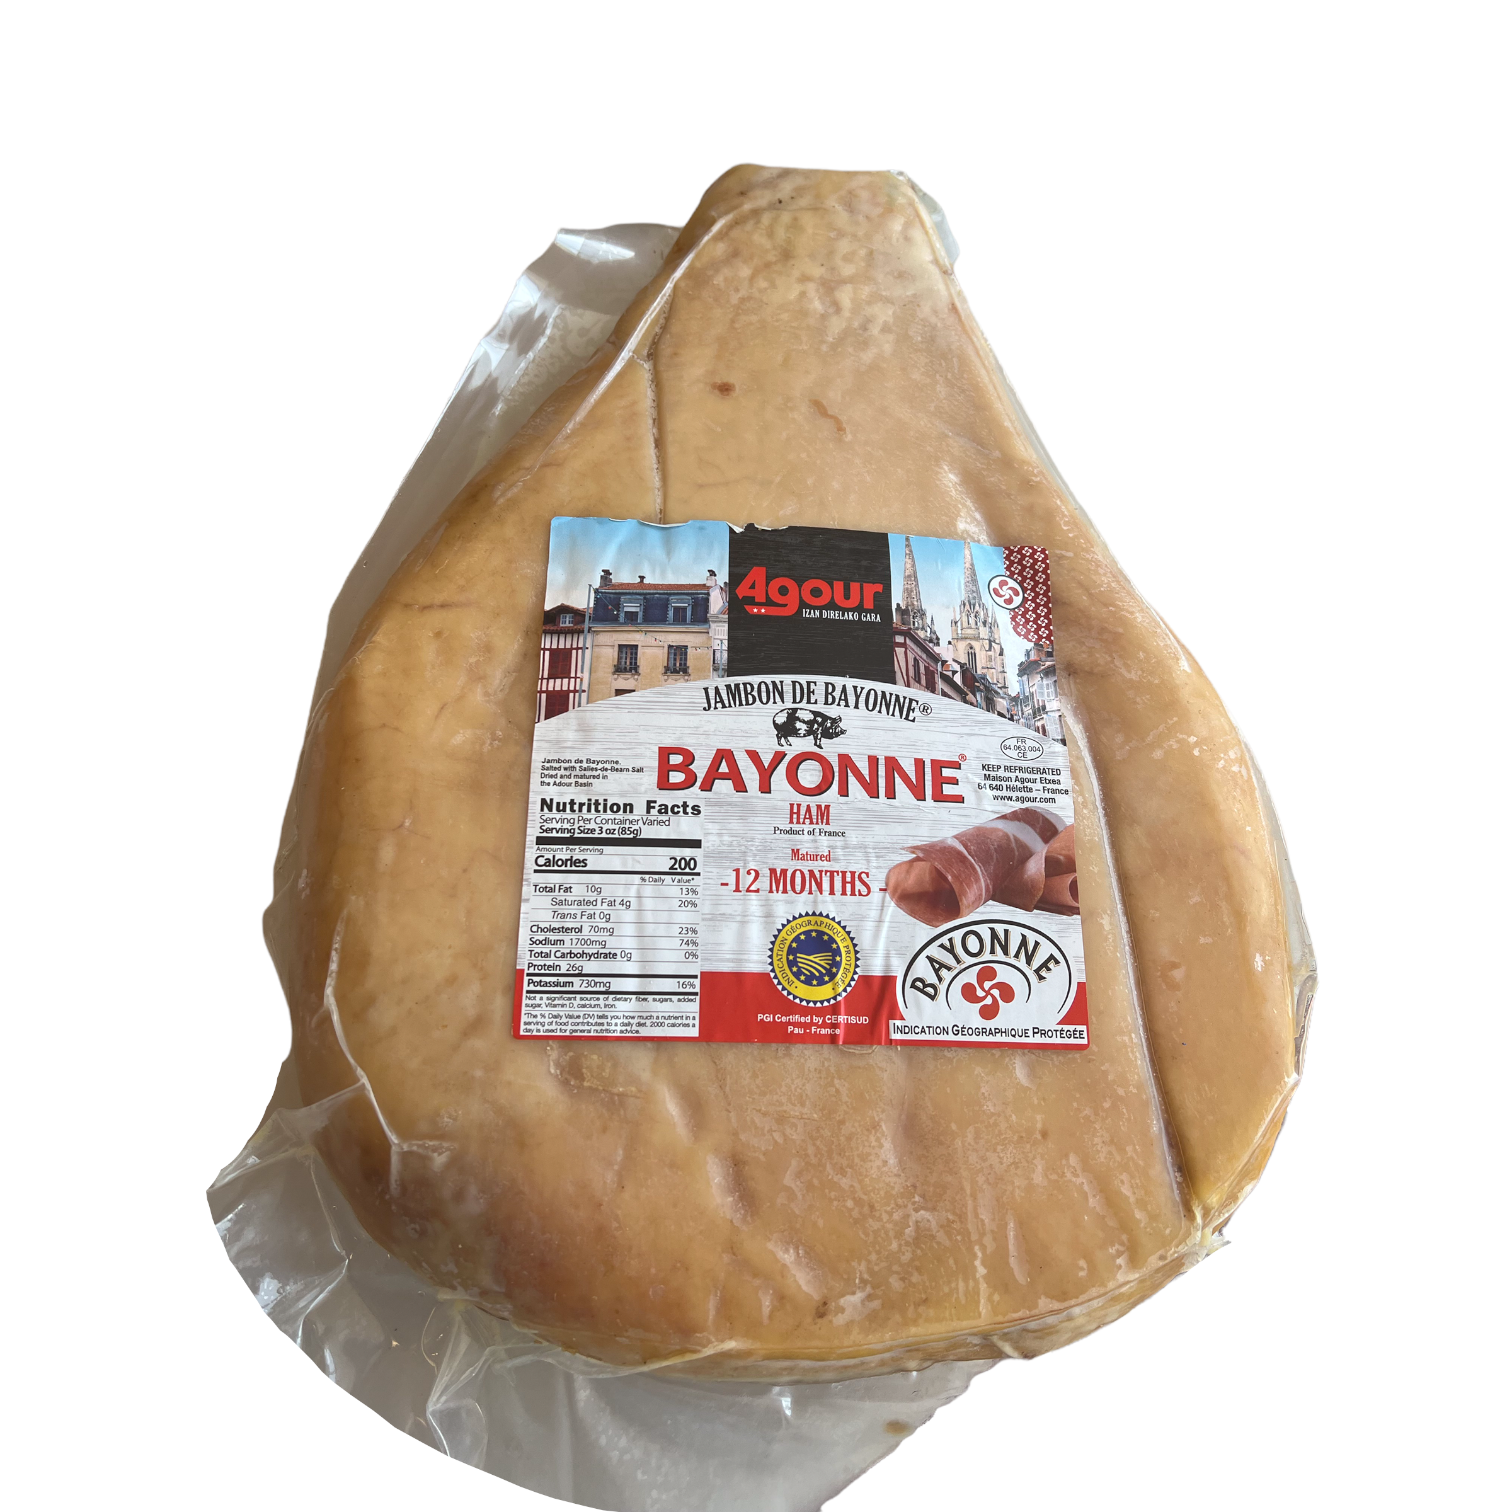 Jambon de Bayonne, French Prosciutto